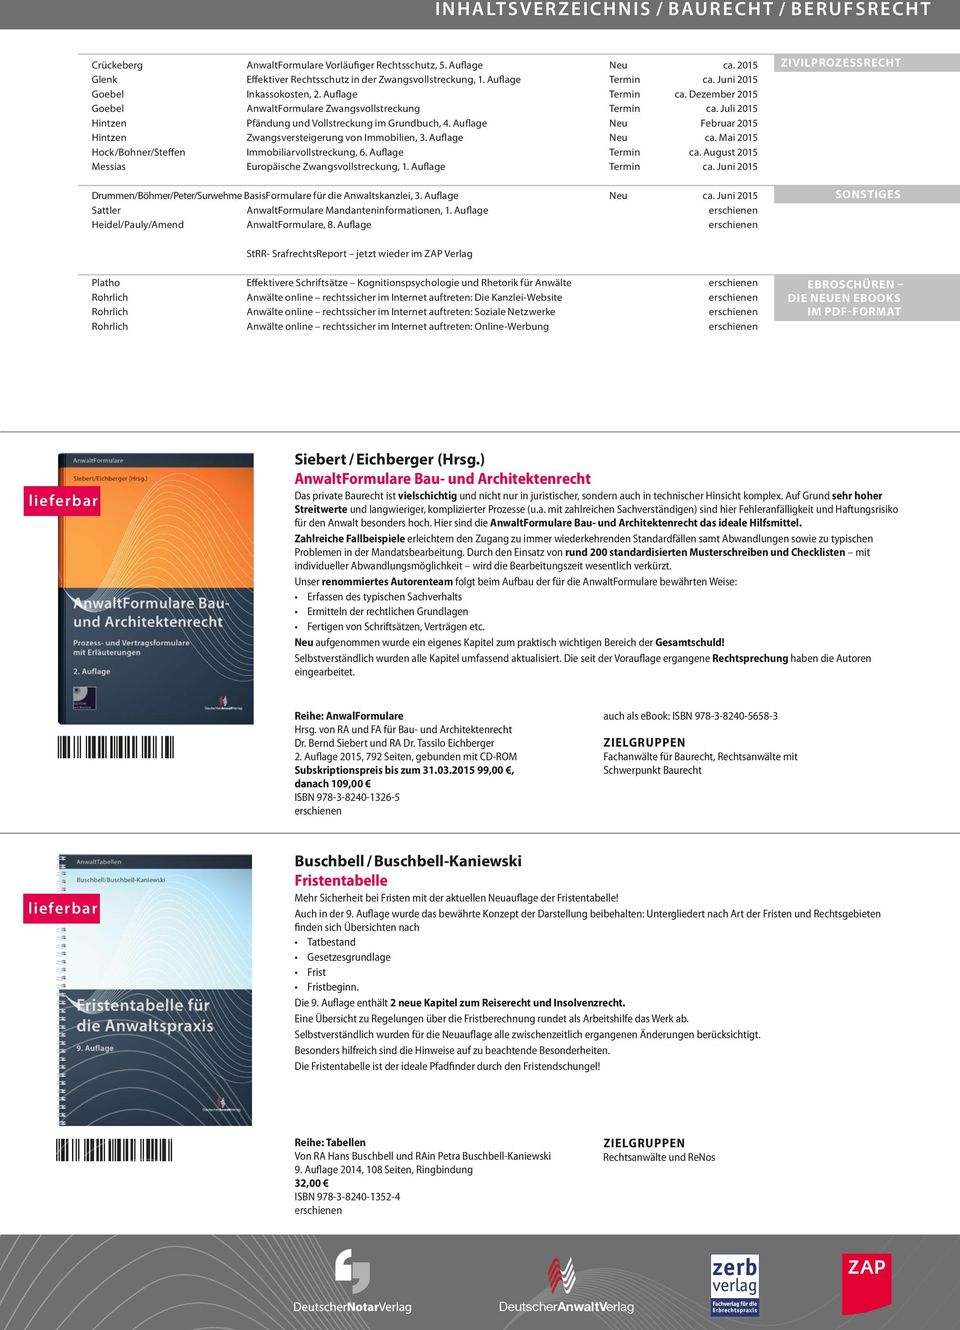 Auflage Neu Februar 2015 Hintzen Zwangsversteigerung von Immobilien, 3. Auflage Neu ca. Mai 2015 Hock/Bohner/Steffen Immobiliarvollstreckung, 6. Auflage Termin ca.